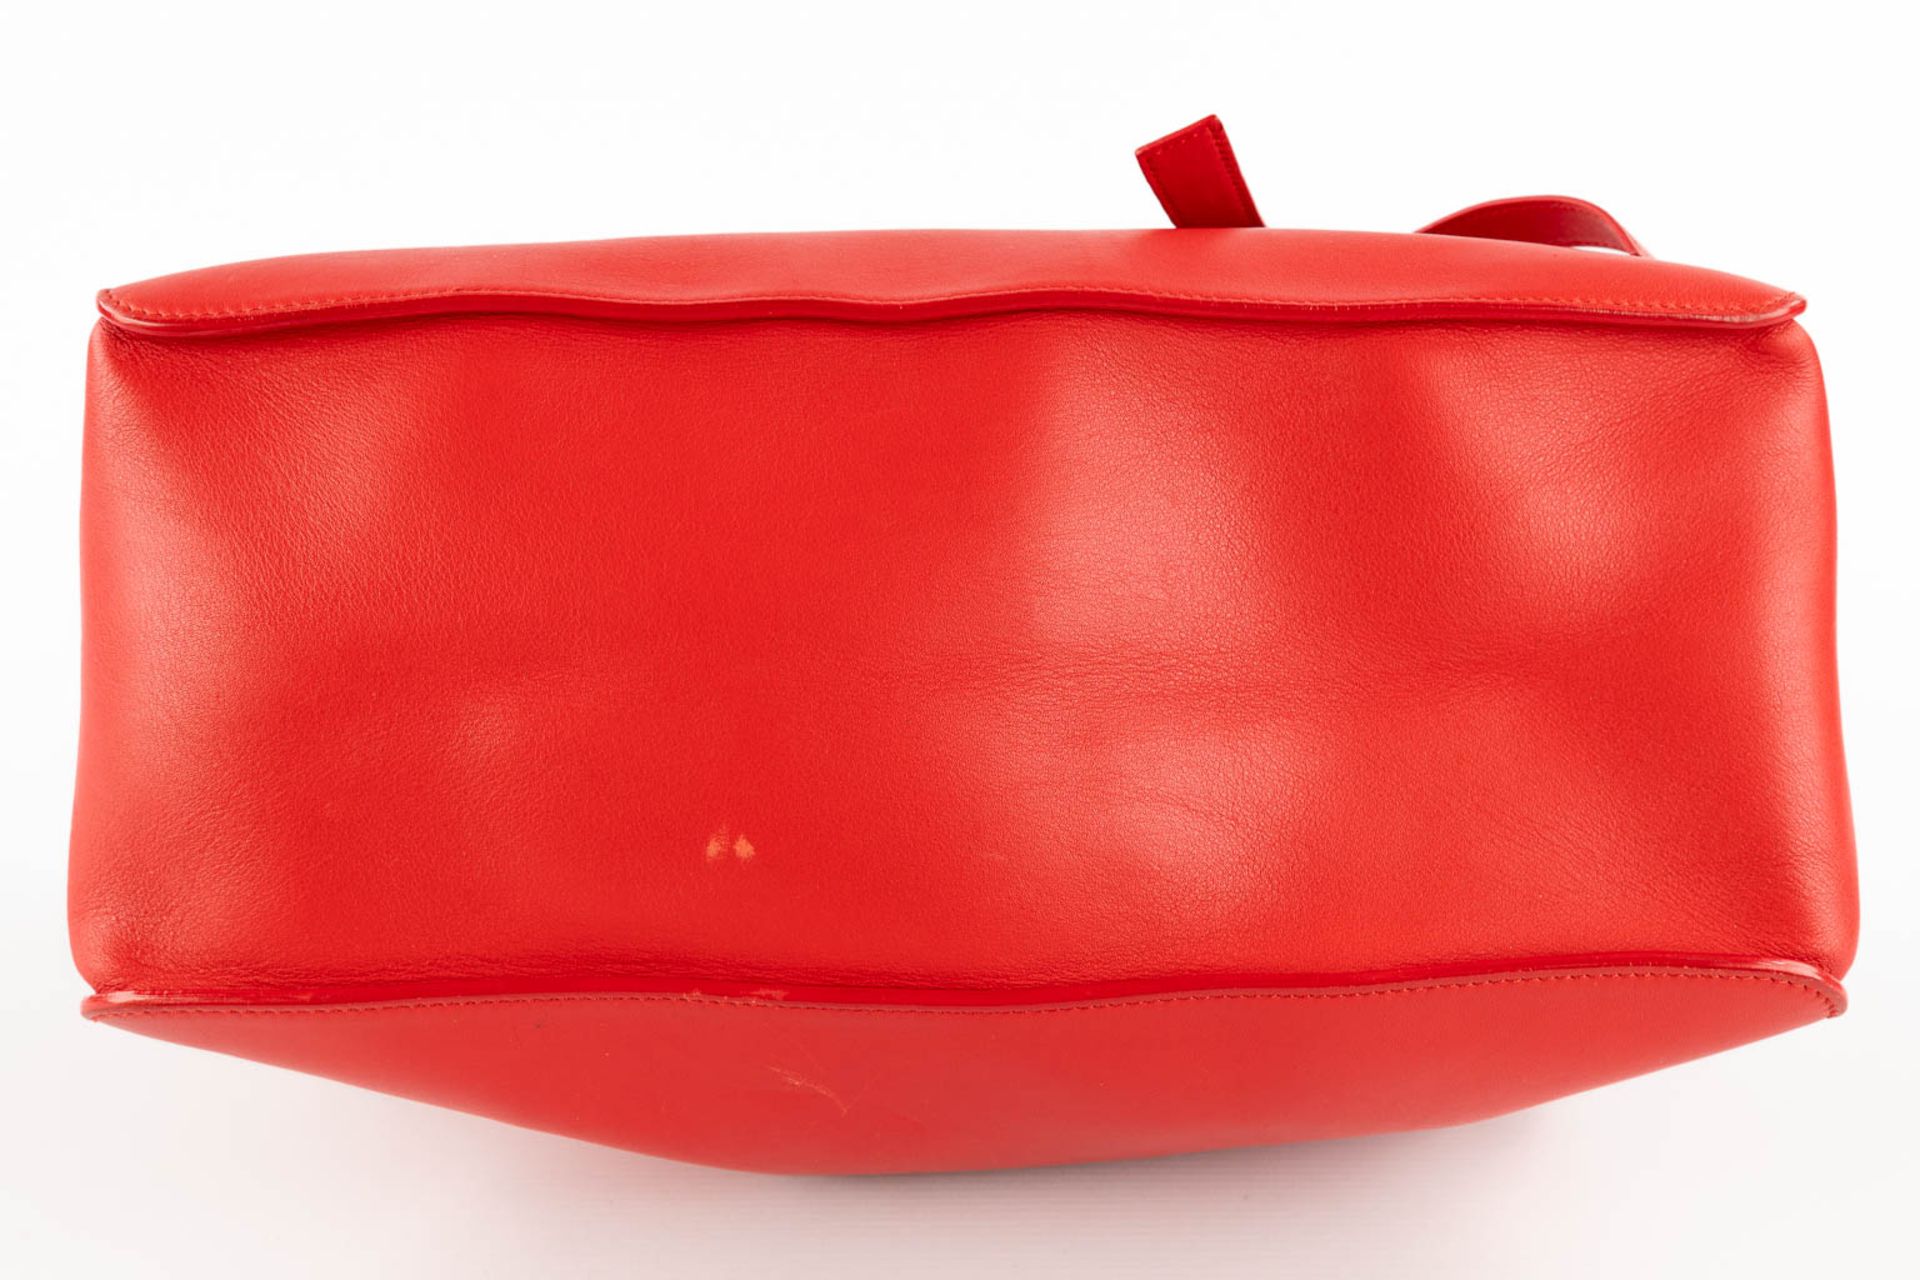 Escada, a handbag made of red leather. (W:33 x H:28 cm) - Image 7 of 17